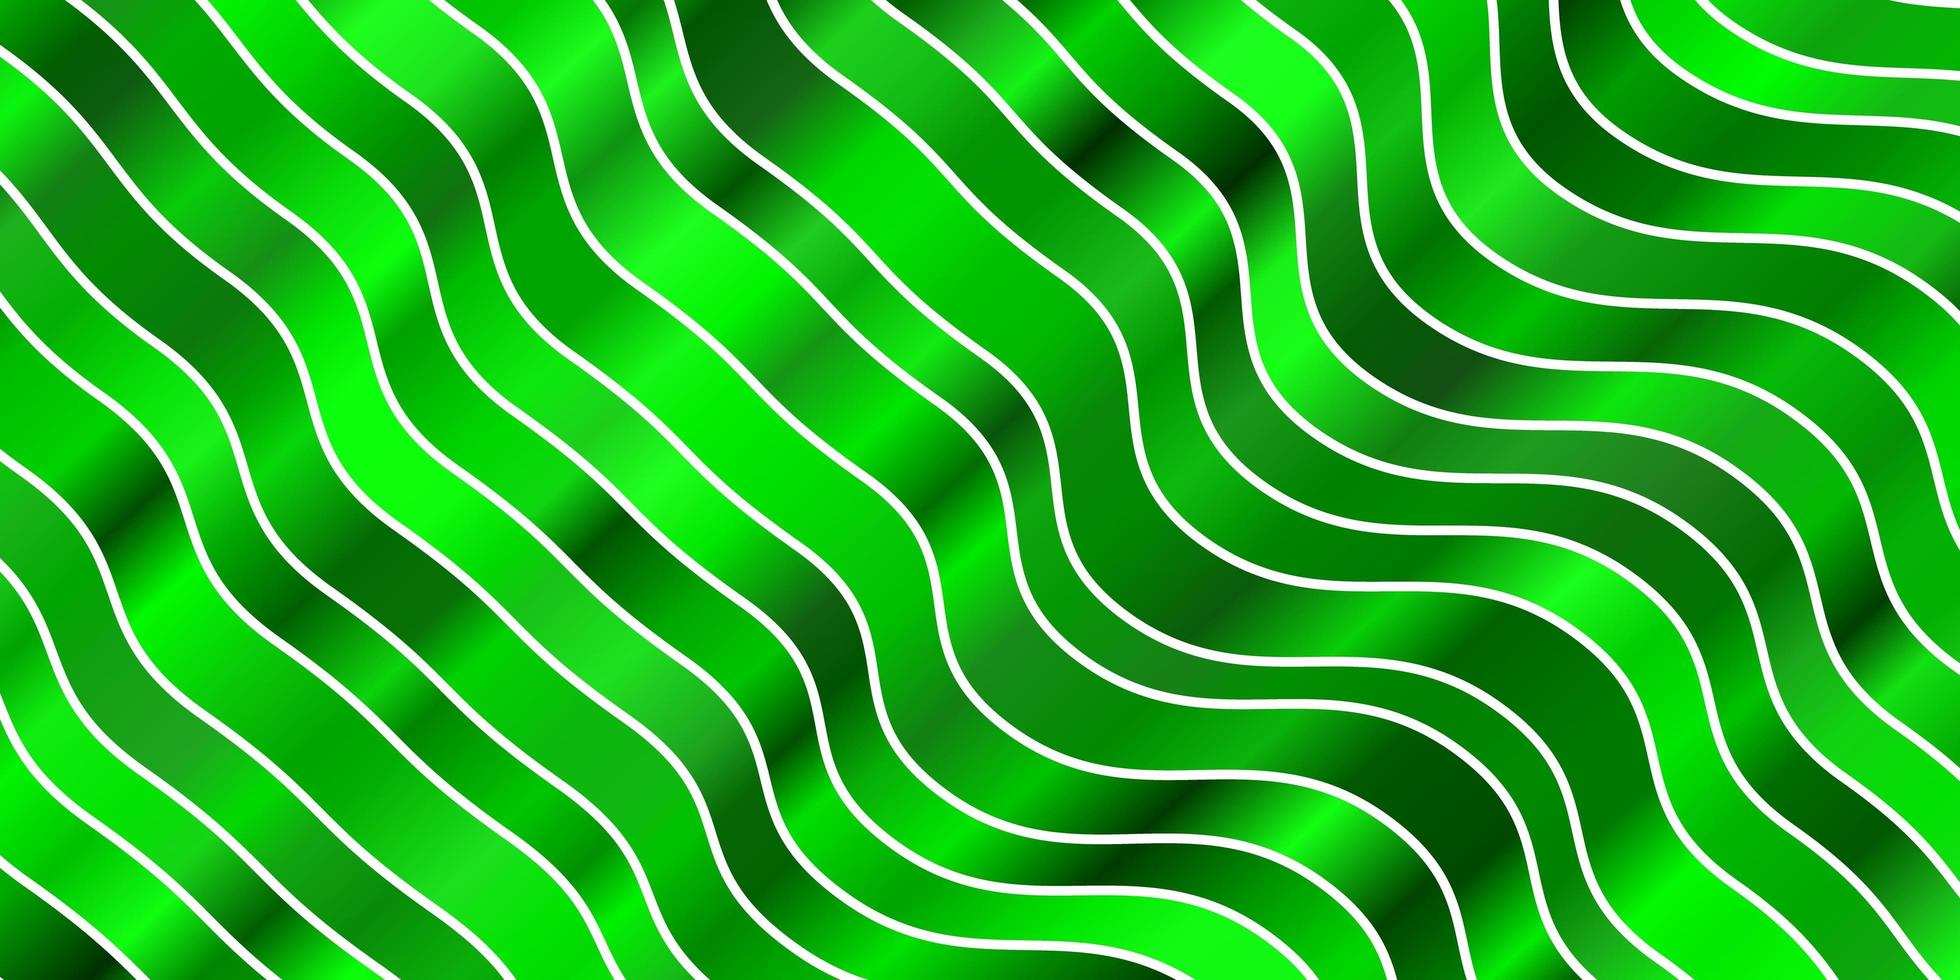 textura de vector verde claro con arco circular.